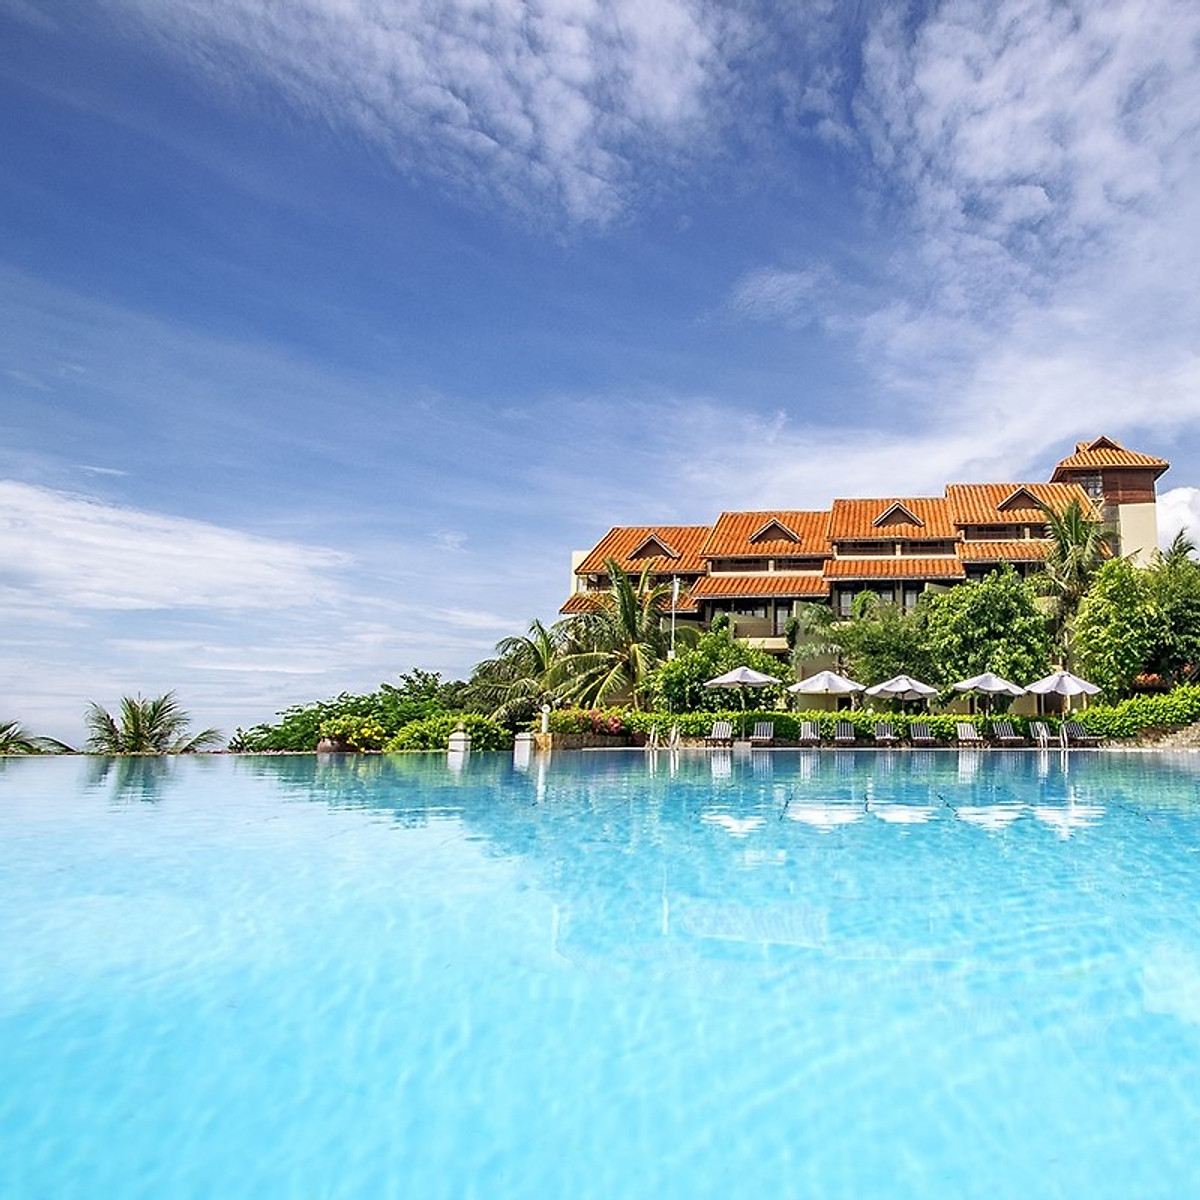 Hình ảnh Romana Resort 4* Mũi Né Phan Thiết - Ăn 03 Bữa, Phòng Hướng Biển, Hồ Bơi Lớn, Bãi Biển Riêng